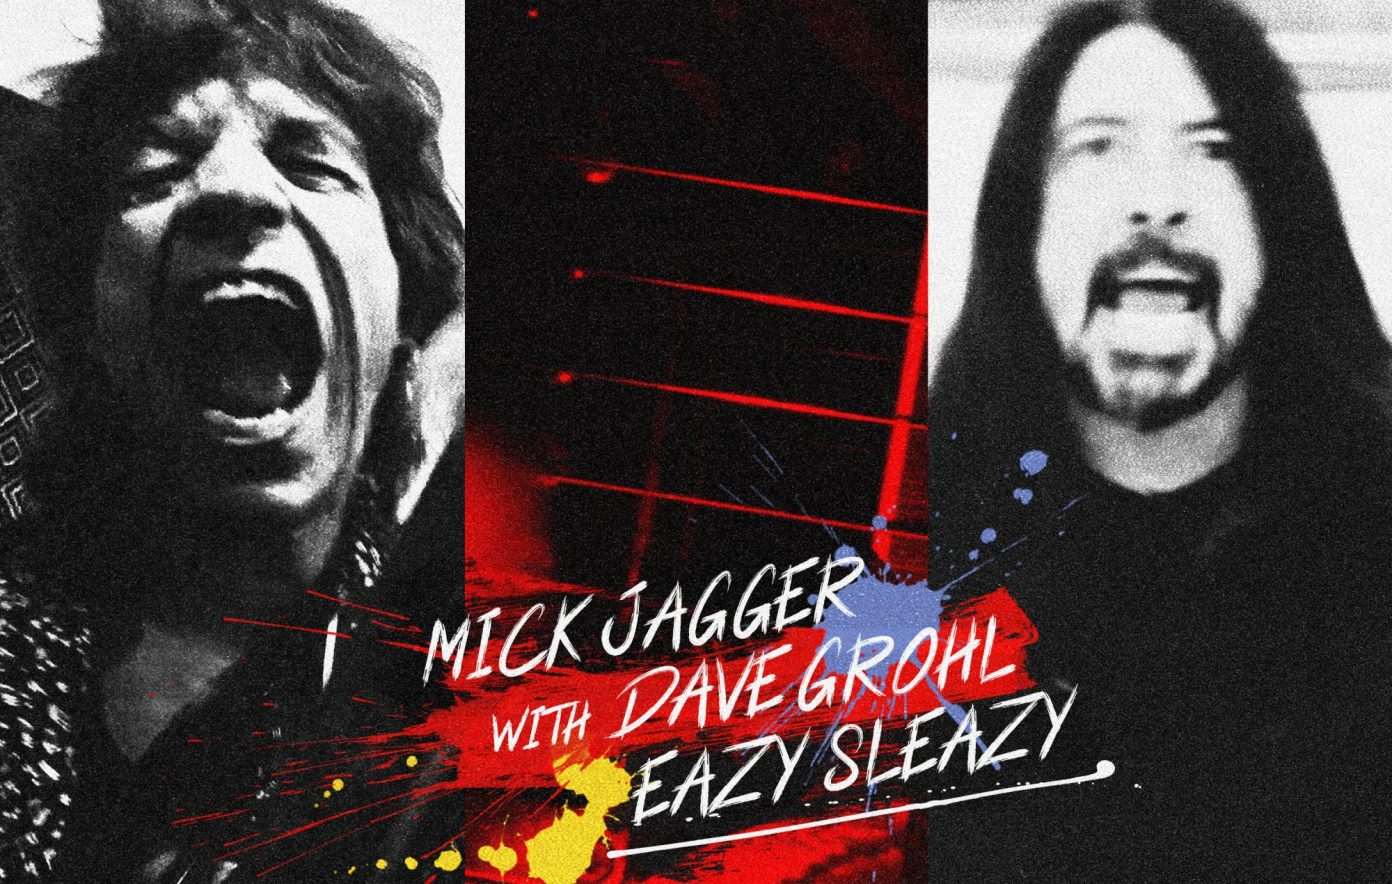 Mick Jagger y Dave Grohl lanzan por sorpresa el single conjunto «Eazy Sleazy»